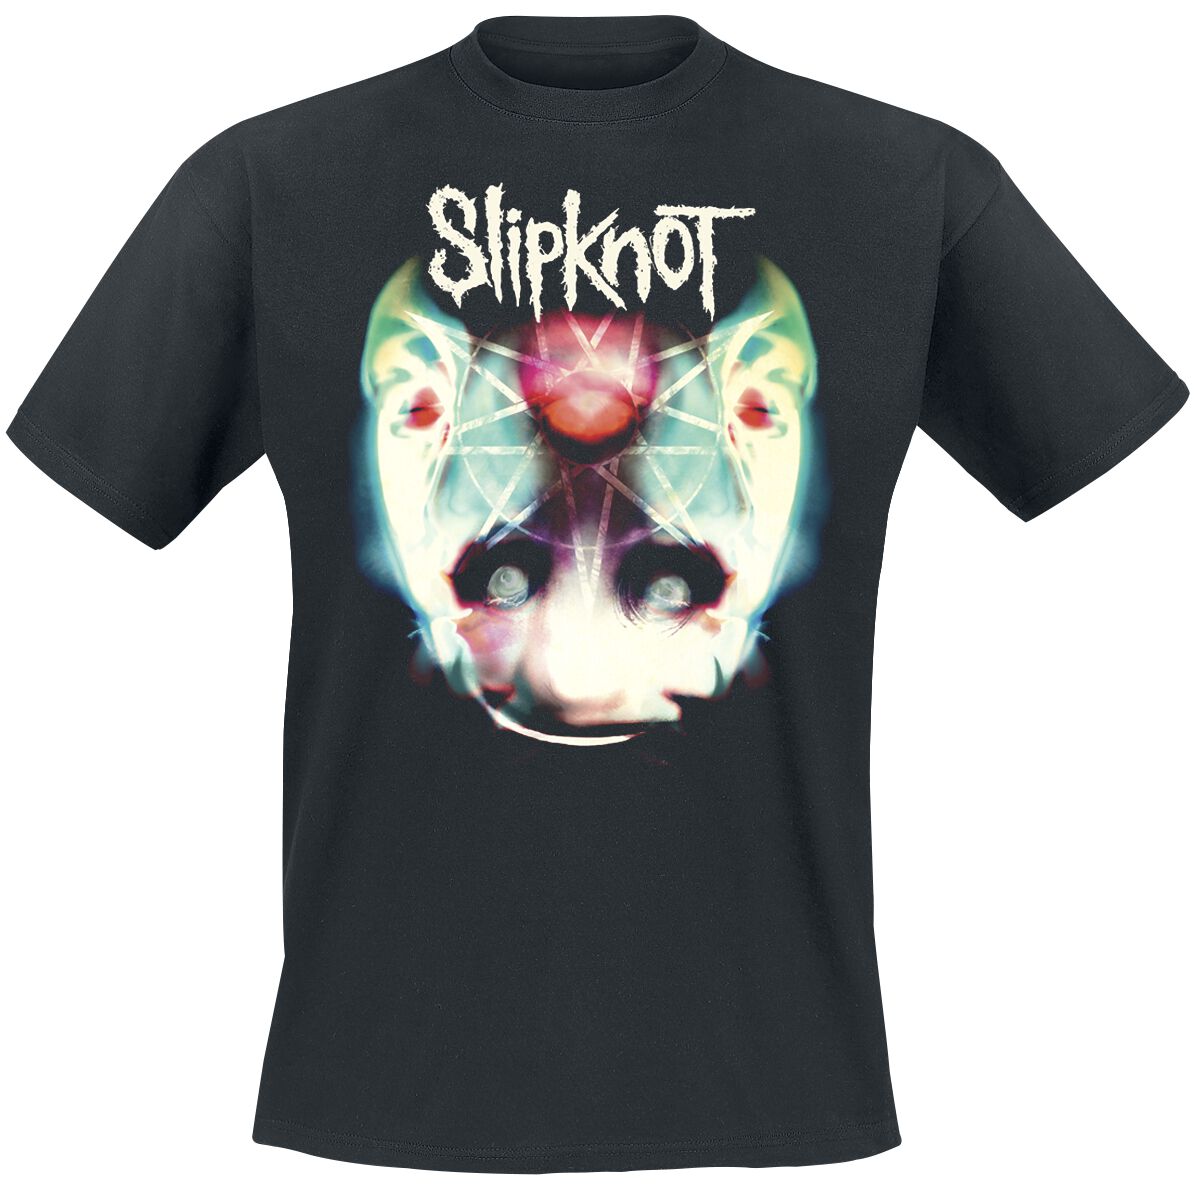 Slipknot T-Shirt - Adderall Face - S bis L - für Männer - Größe S - schwarz  - Lizenziertes Merchandise!